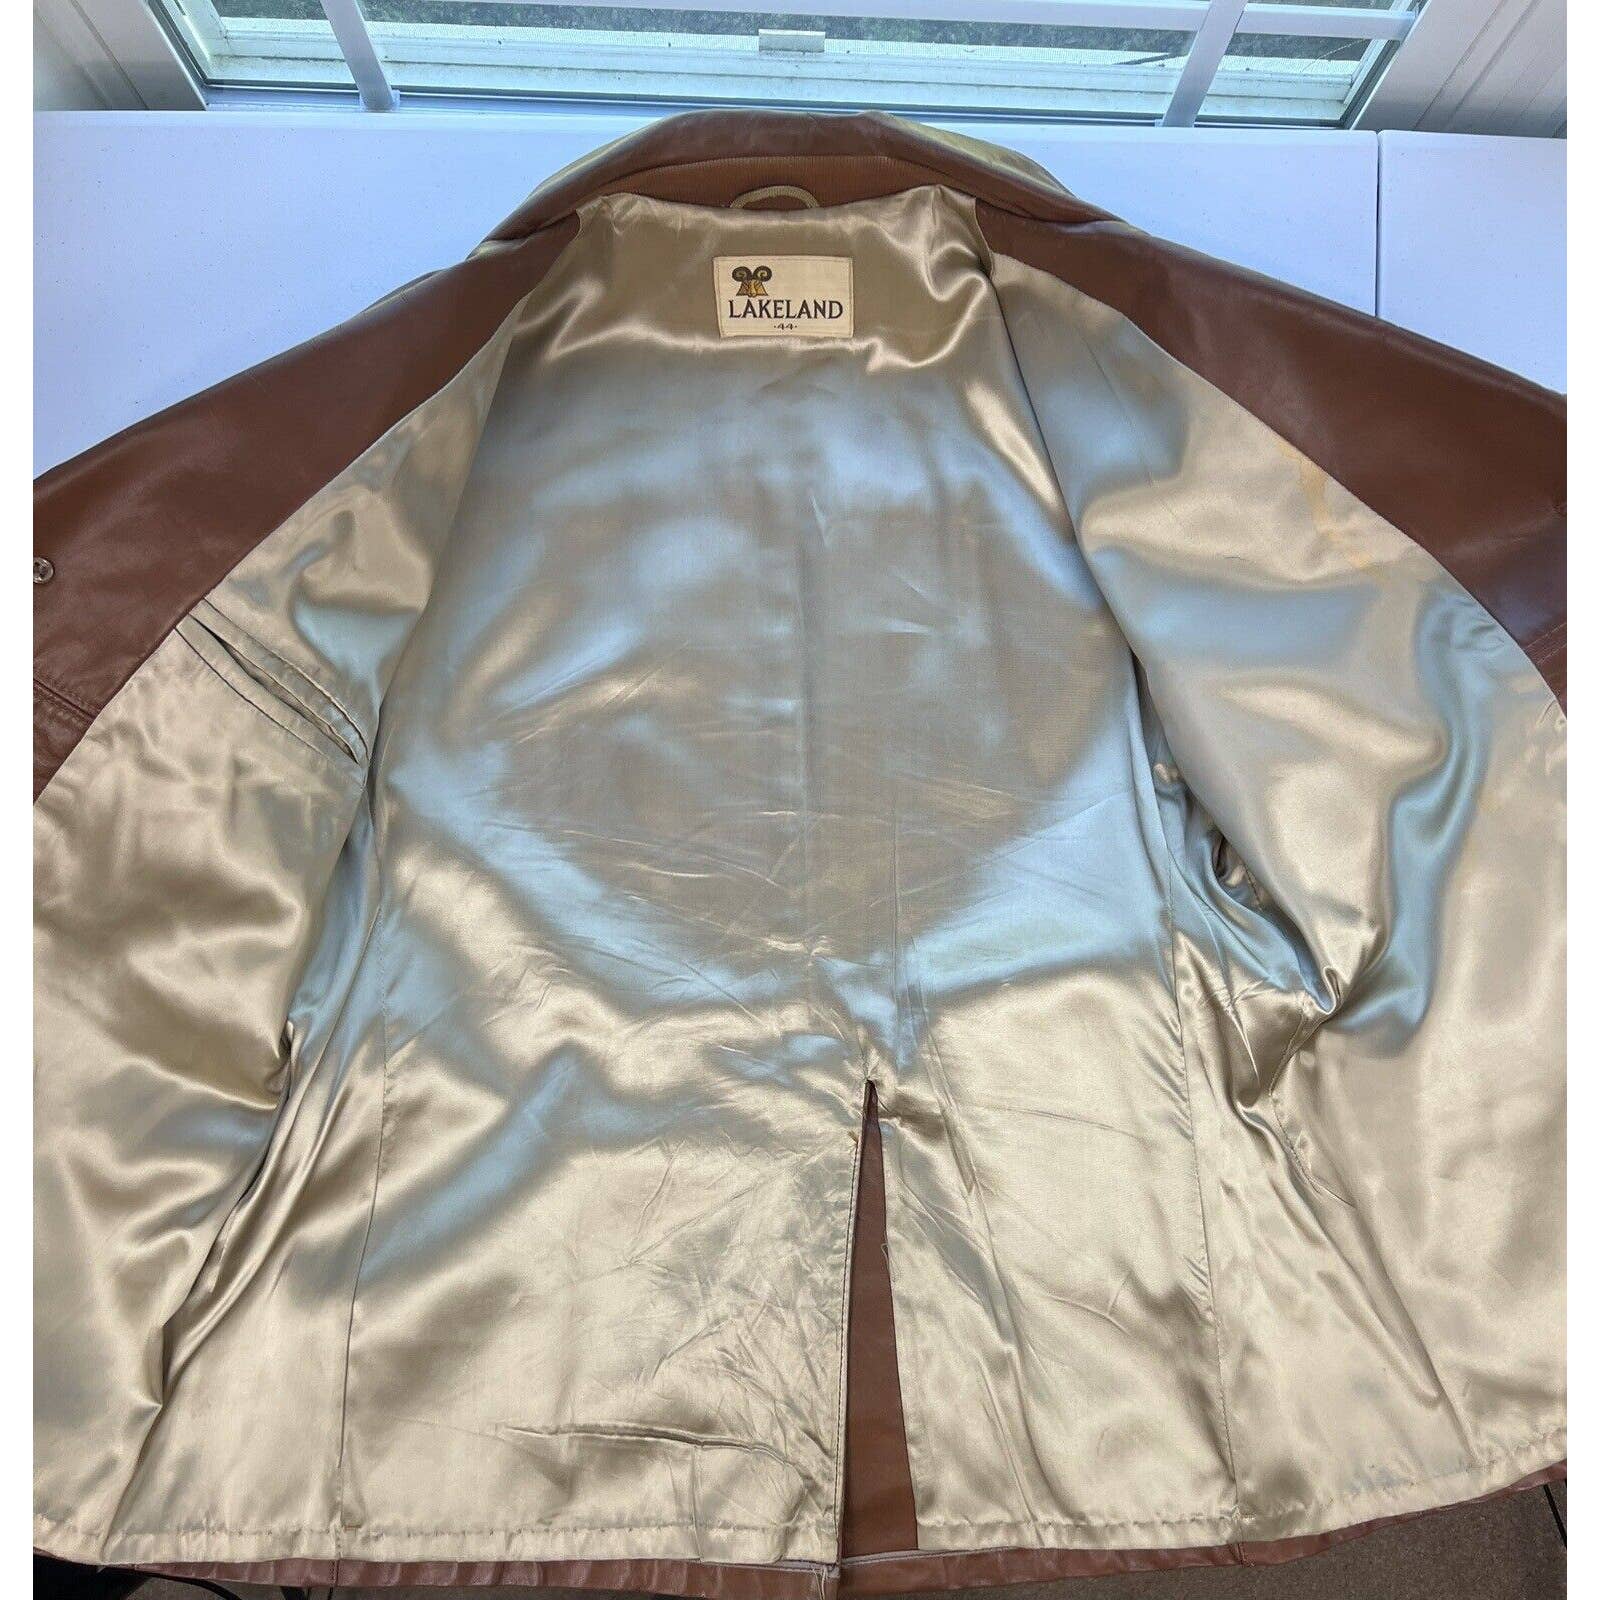 Vintage 70s Leather Blazer Coat Jacket Men's Size 44 Large Caramel Brown Mobster